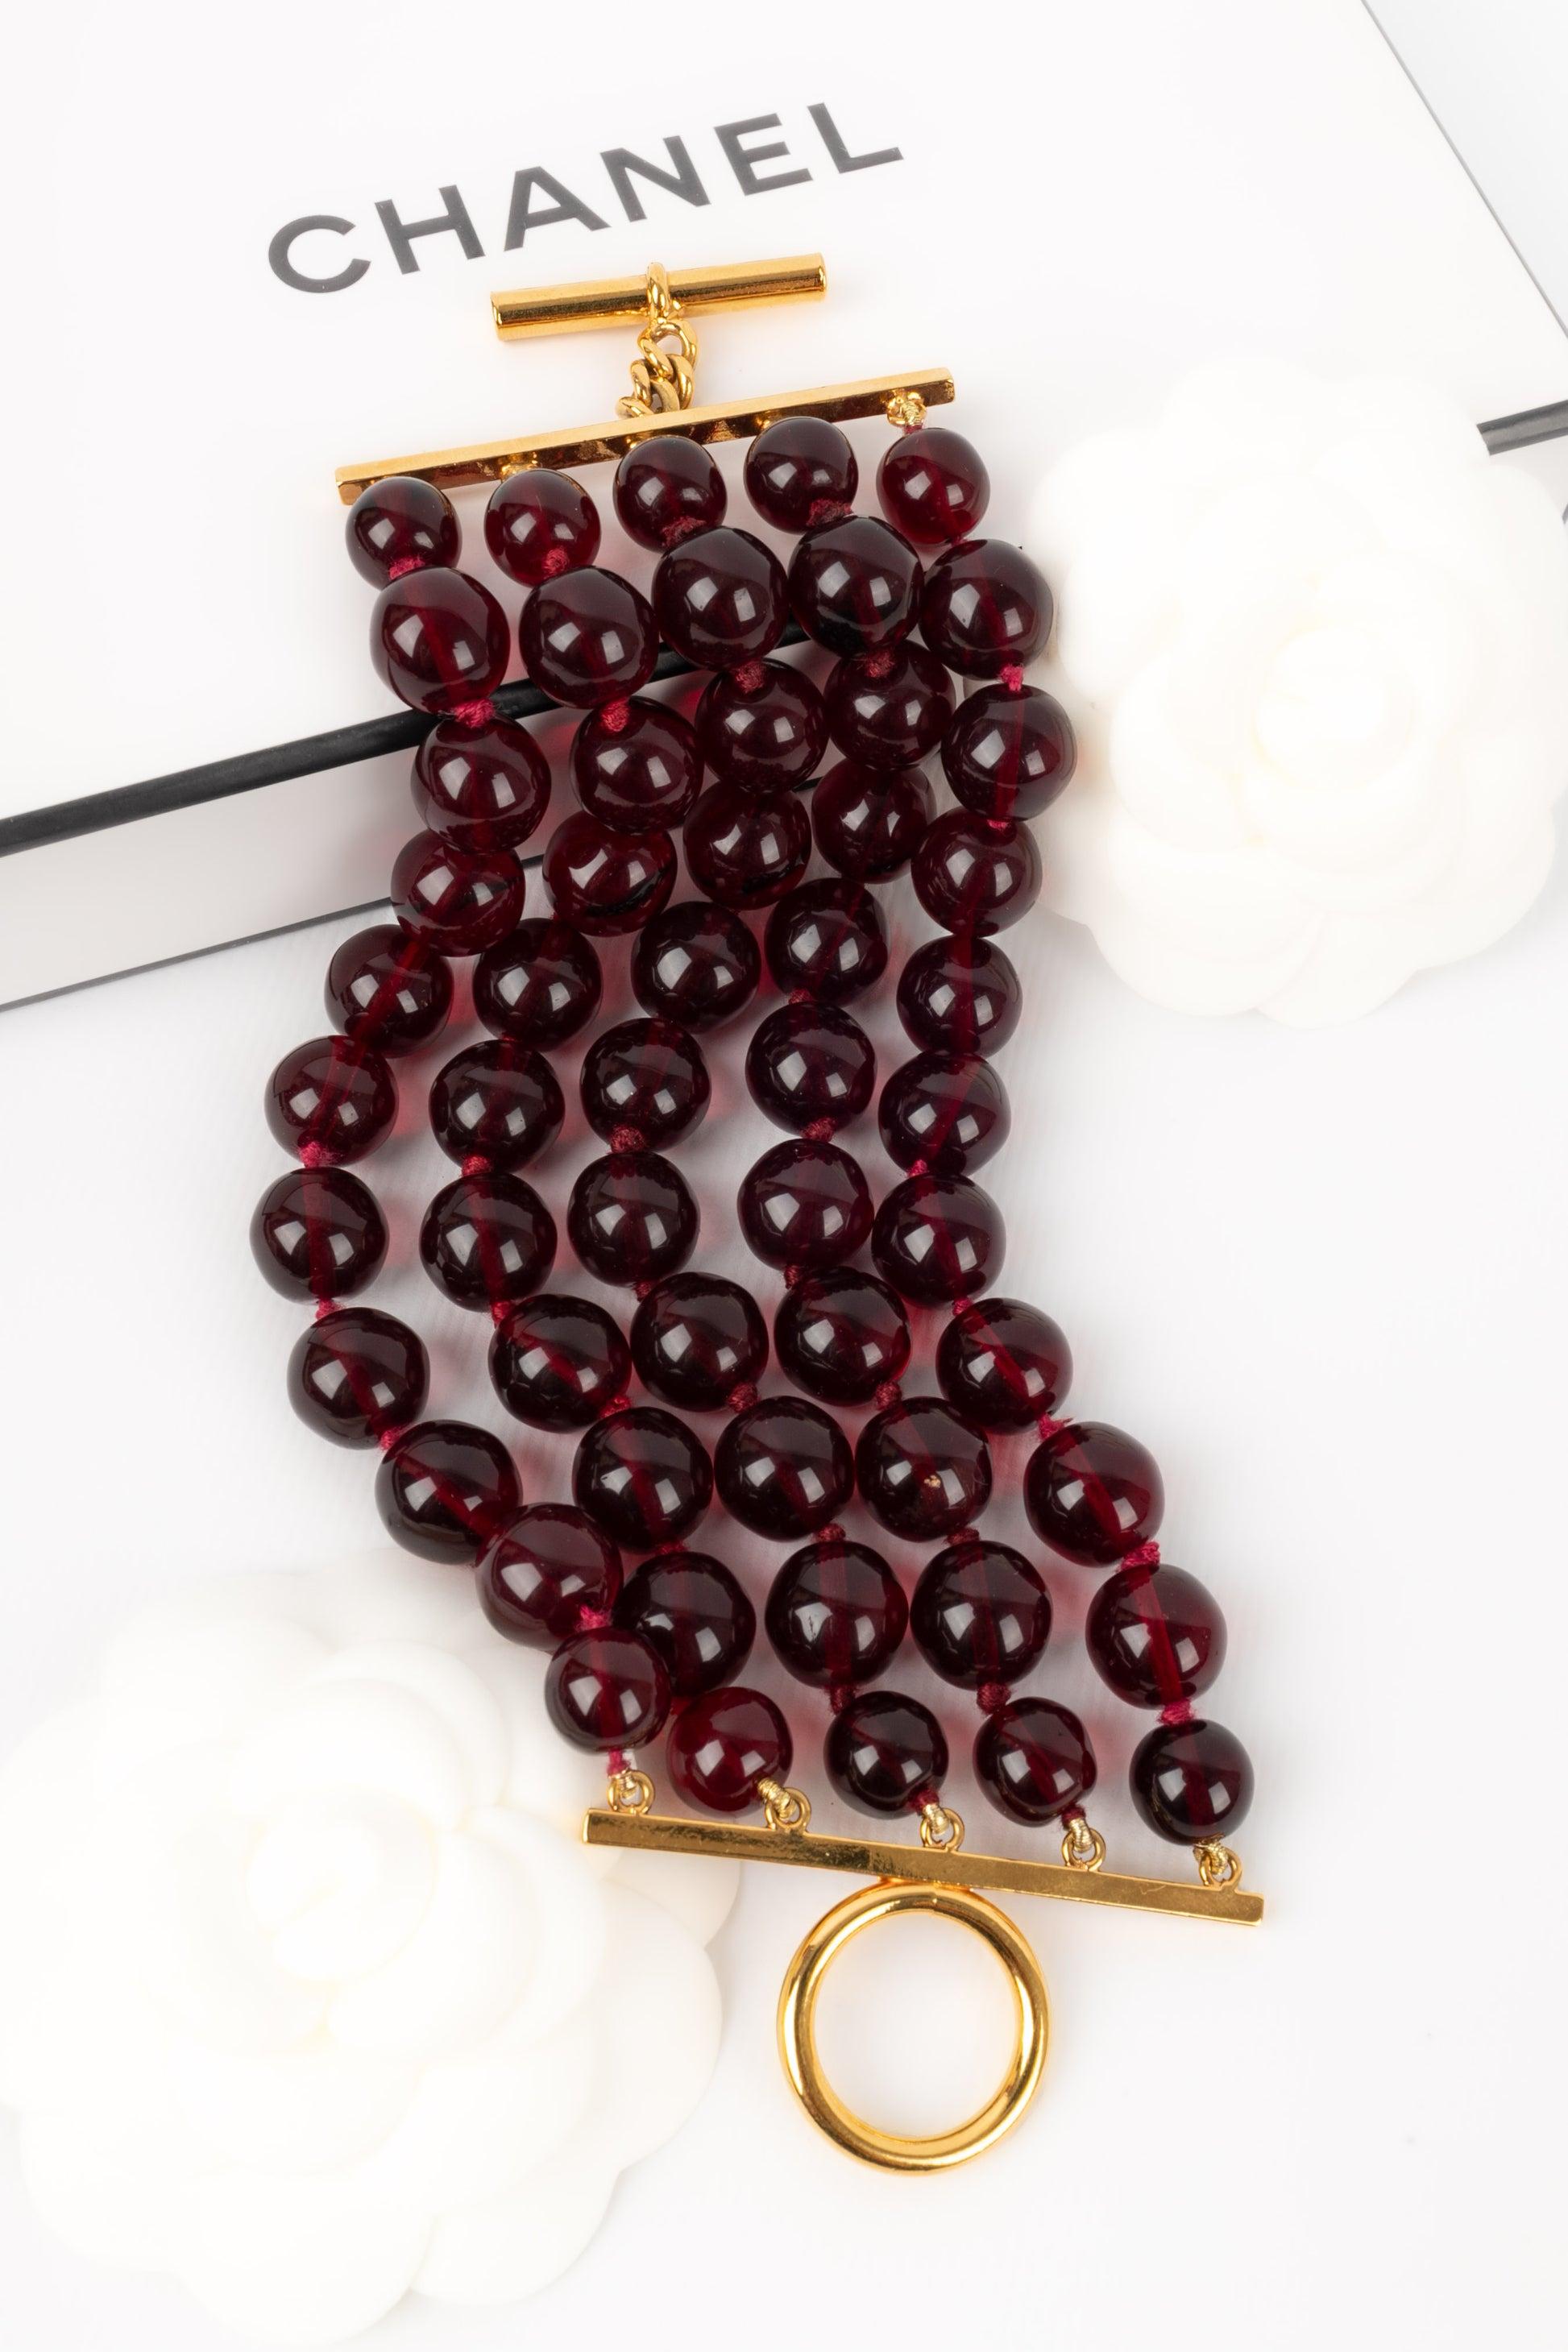 Chanel - (Fabriqué en France) Bracelet de perles de verre rouges. Collectional 2cc9.

Informations complémentaires :
Condit : Très bon état.
Dimensions : Longueur : 20 cm - Largeur : 6,5 cm Longueur : 20 cm - Largeur : 6,5 cm

Référence du vendeur :